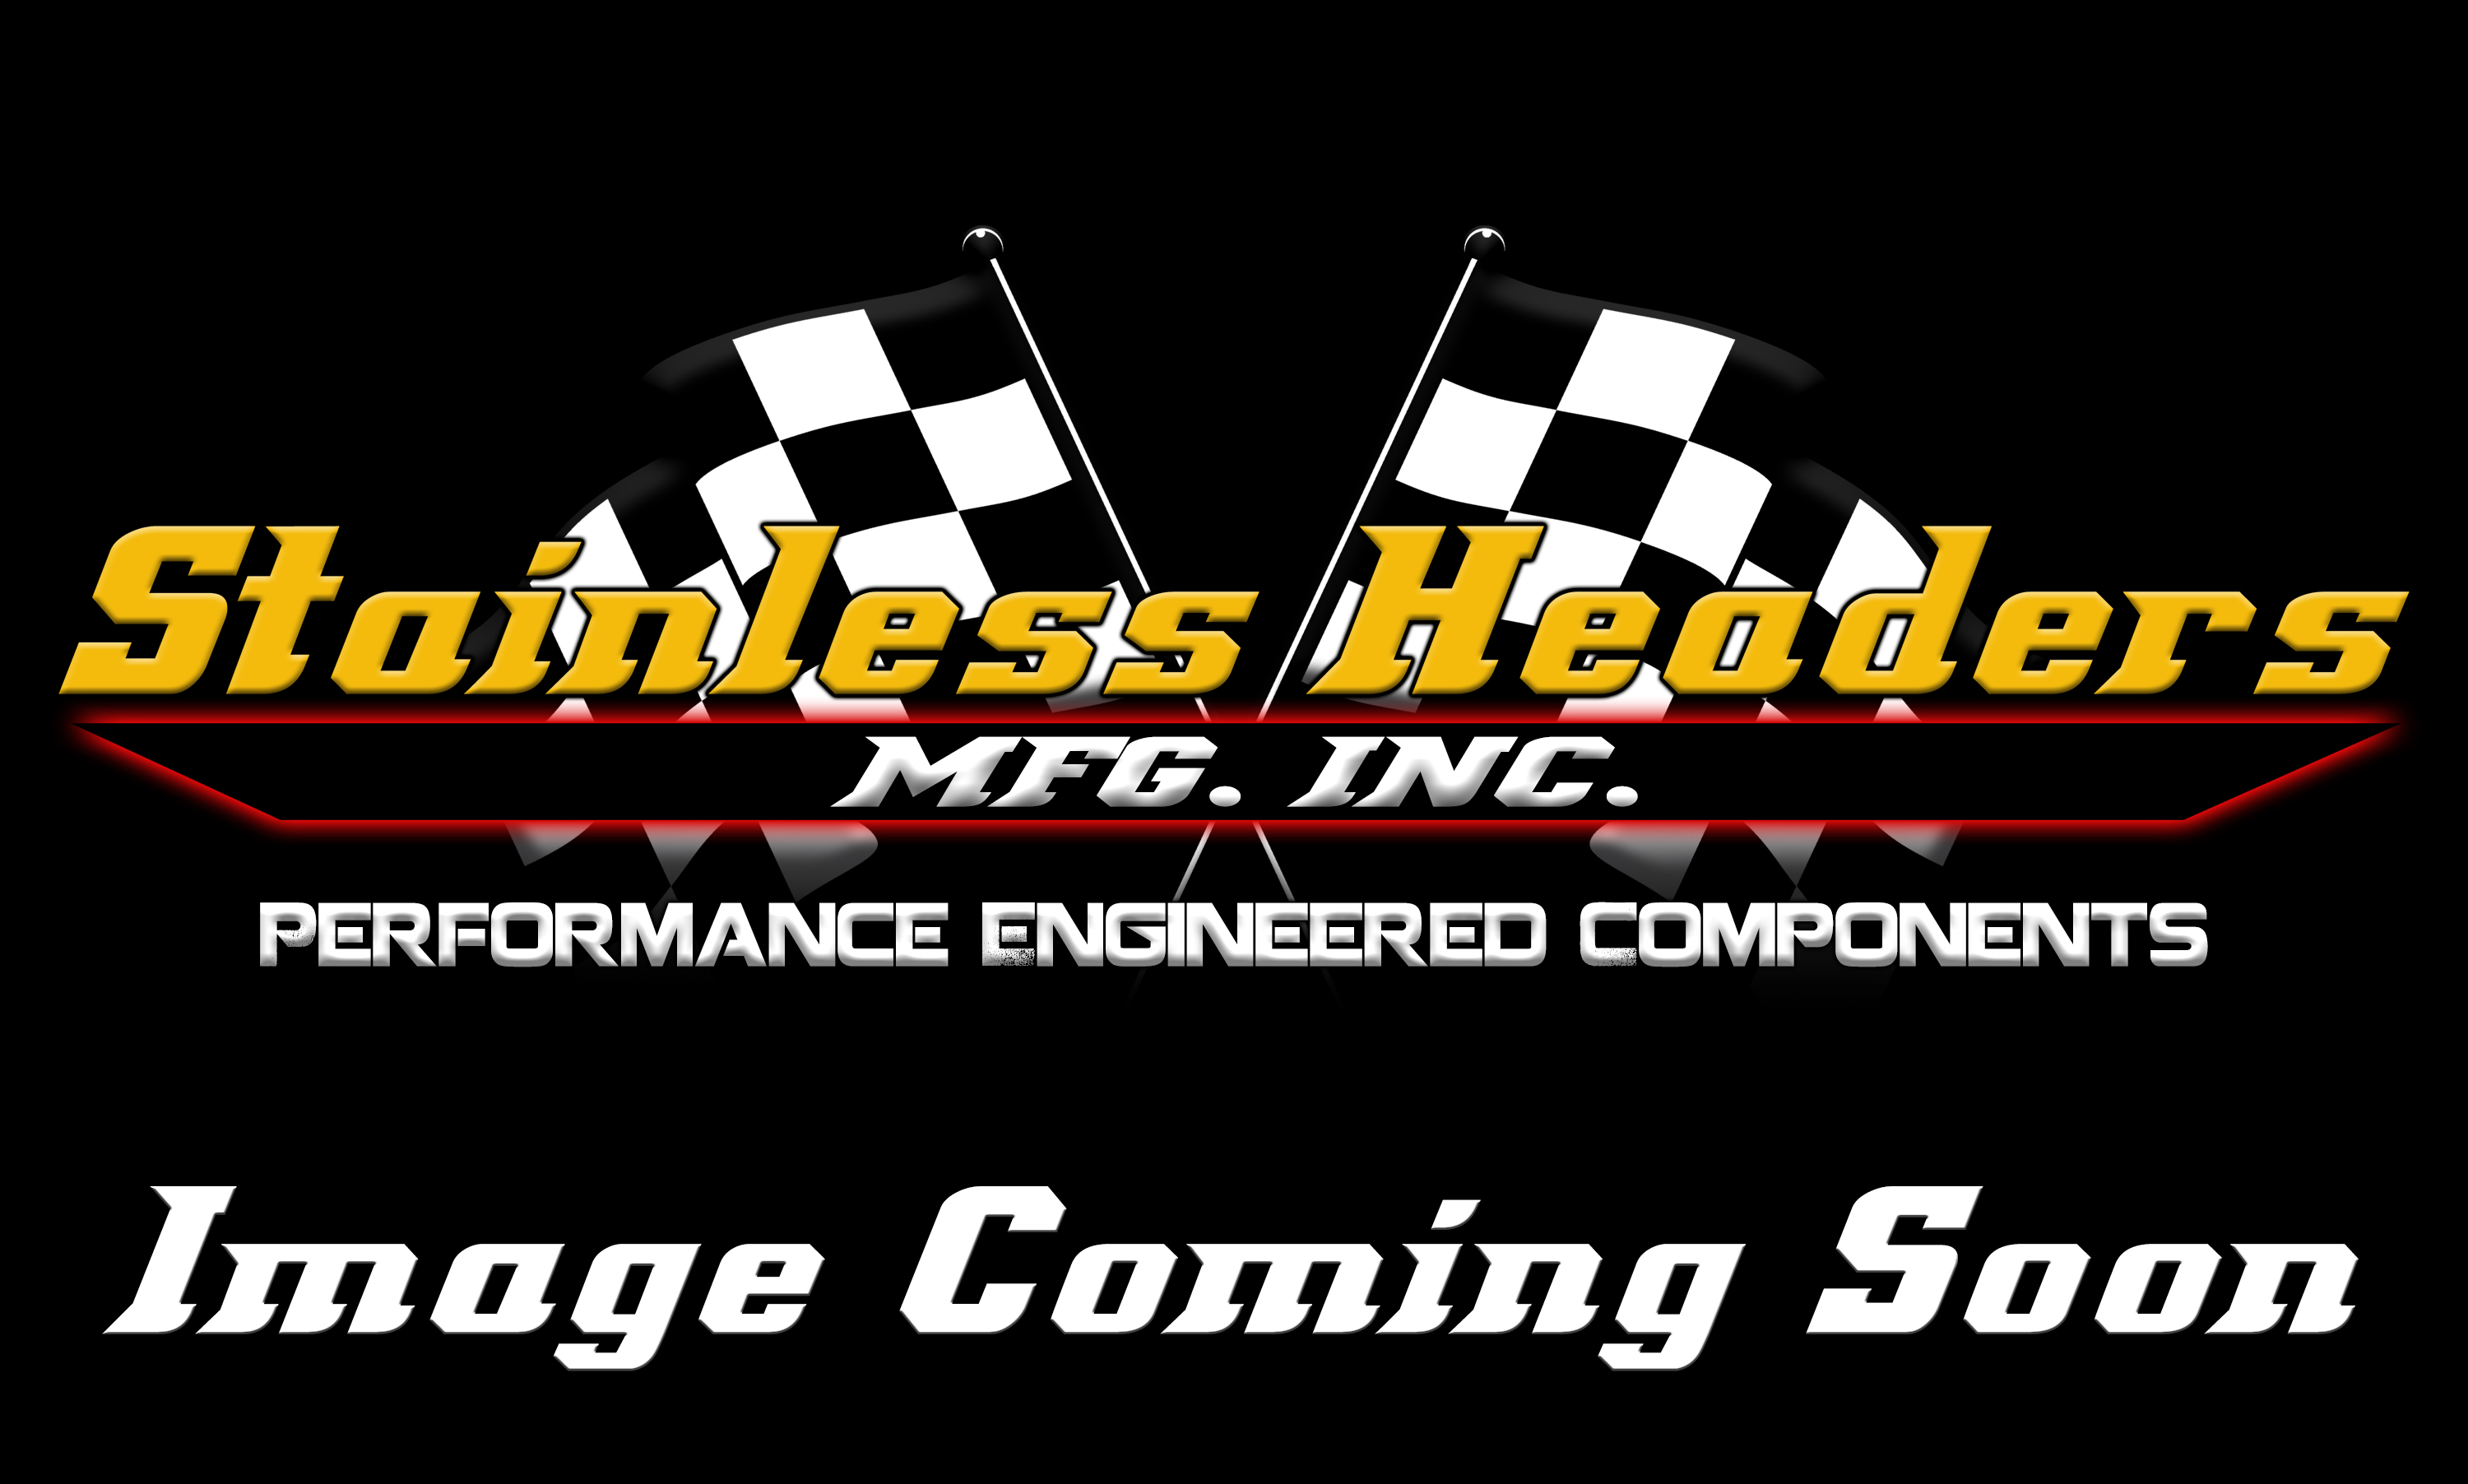 Stainless Headers - Mopar 426 Hemi D4 Raised Square Port Custom Turbo Header Build Kit - Image 4